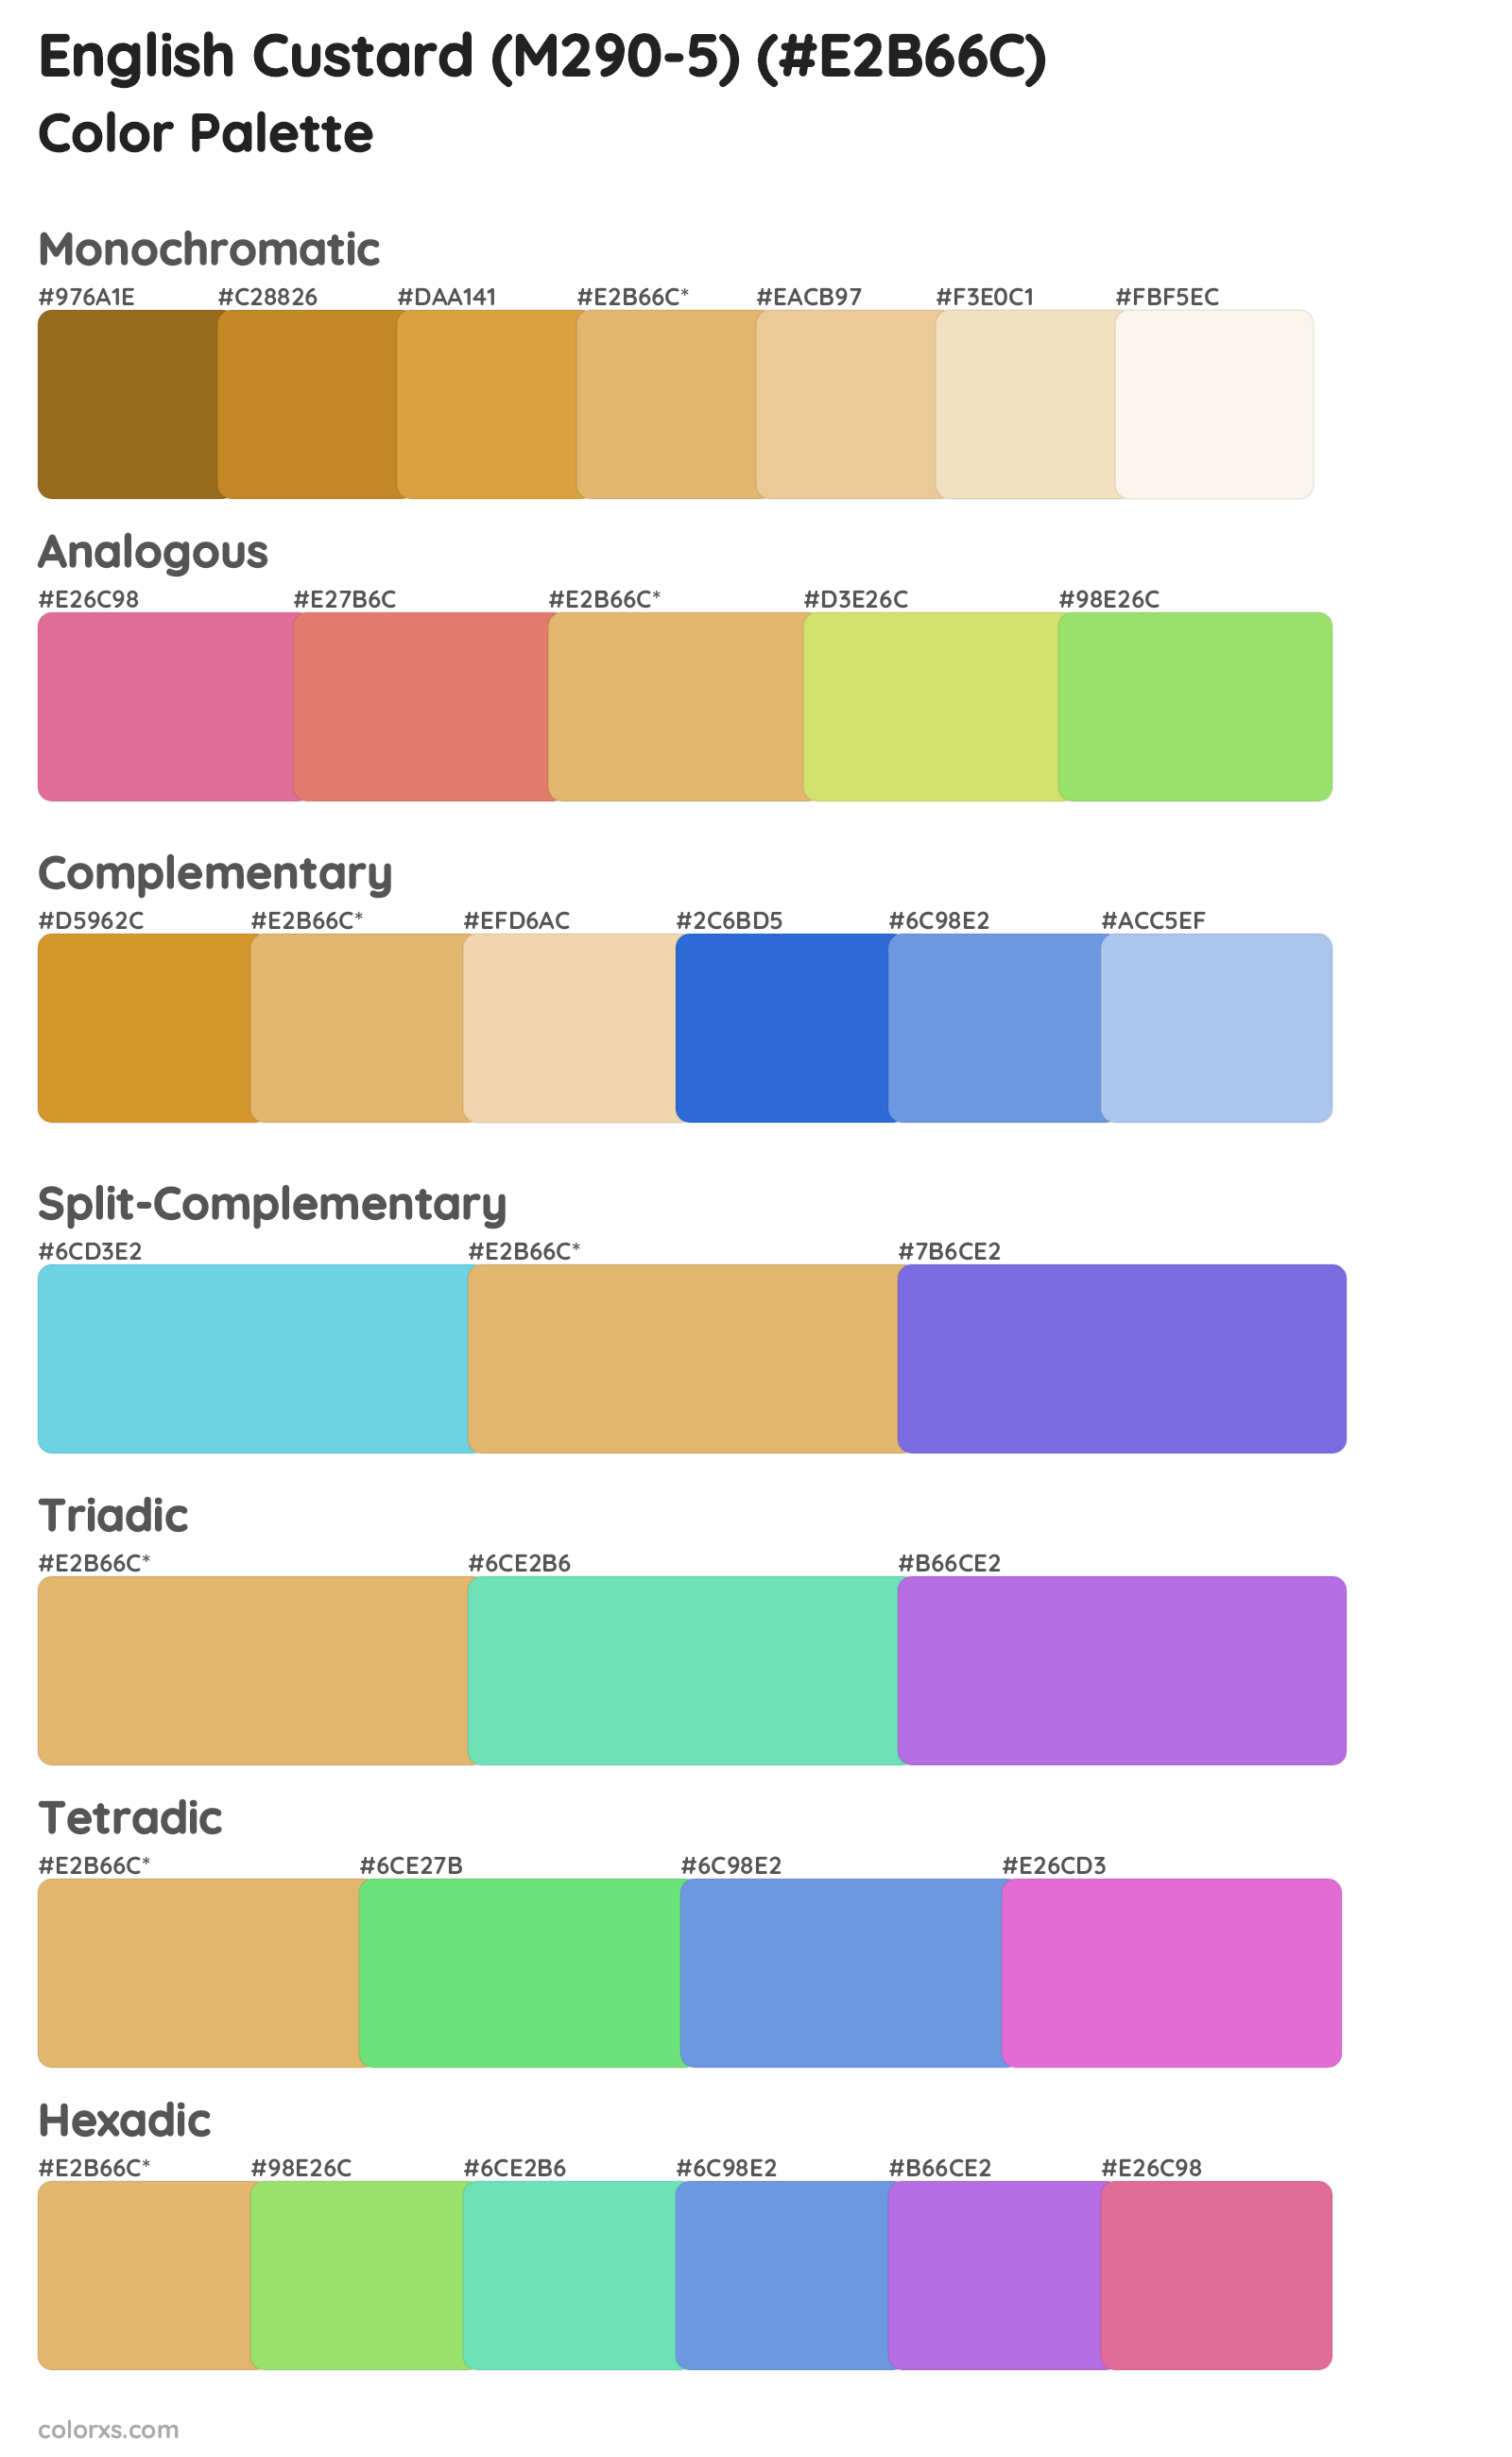 English Custard (M290-5) Color Scheme Palettes